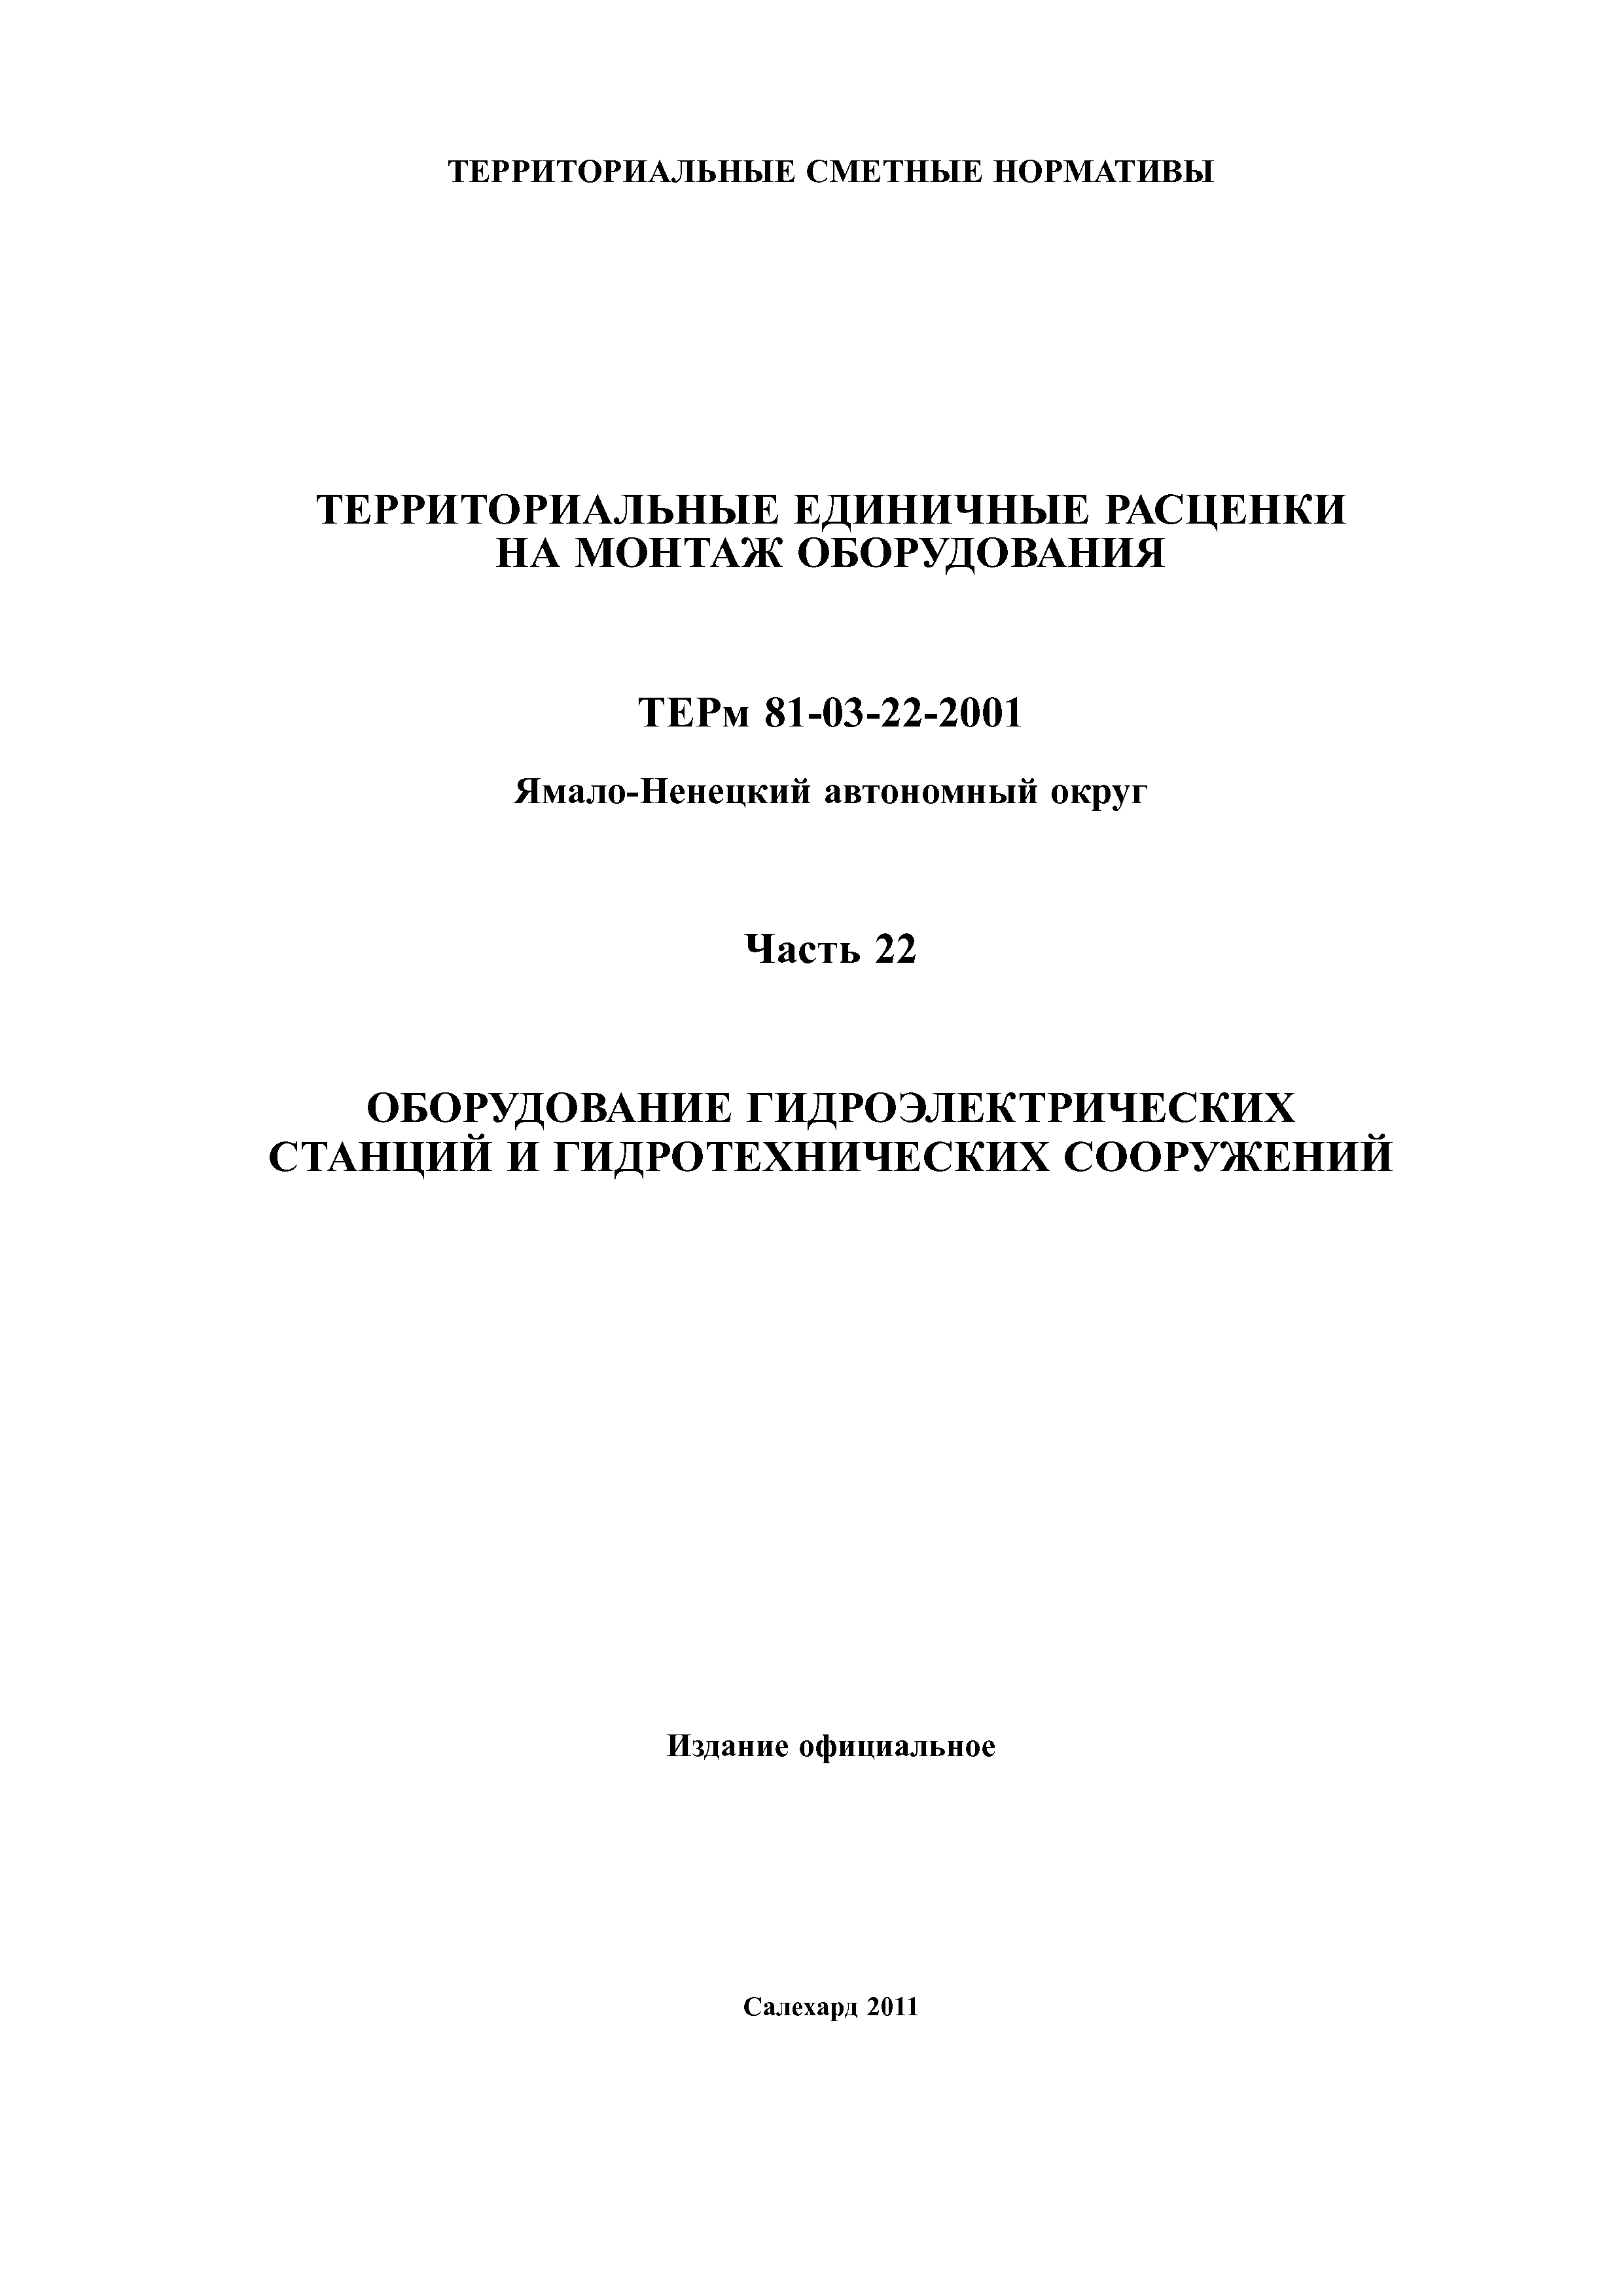 ТЕРм Ямало-Ненецкий автономный округ 22-2001